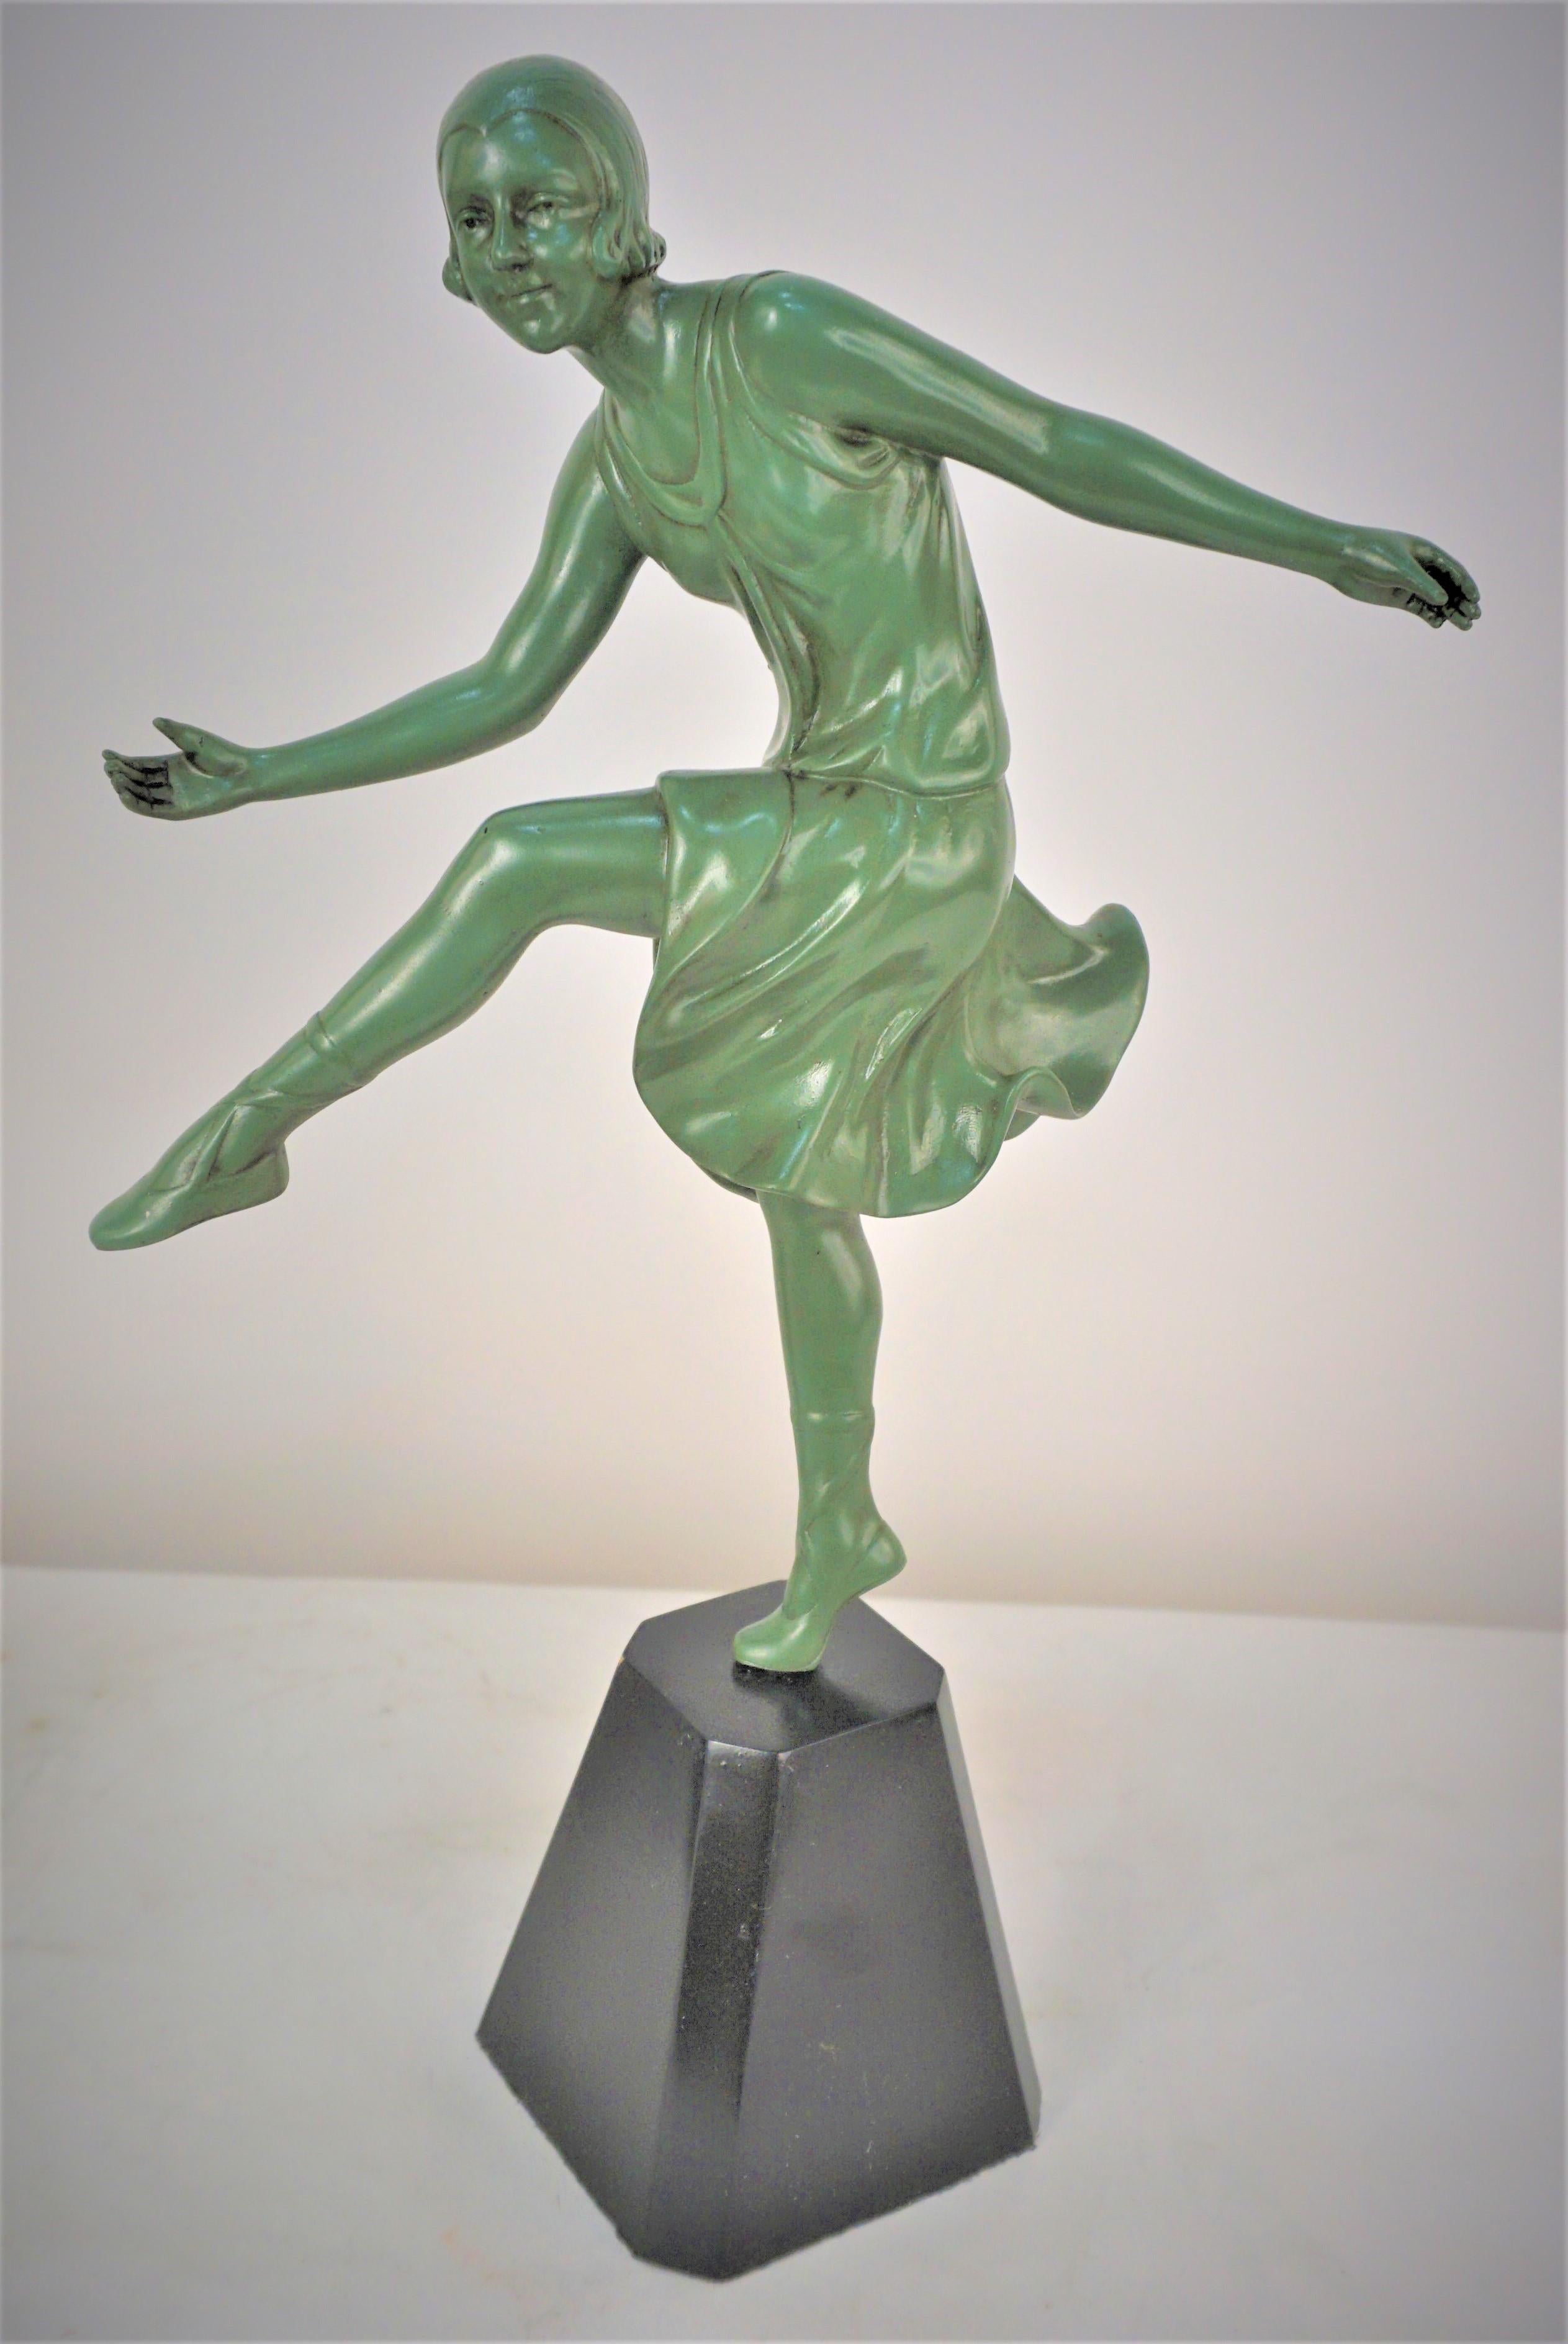 Paire de sculptures en bronze art déco françaises des années 1930 représentant des danseuses, finies en vert Verdi et laquées en noir.